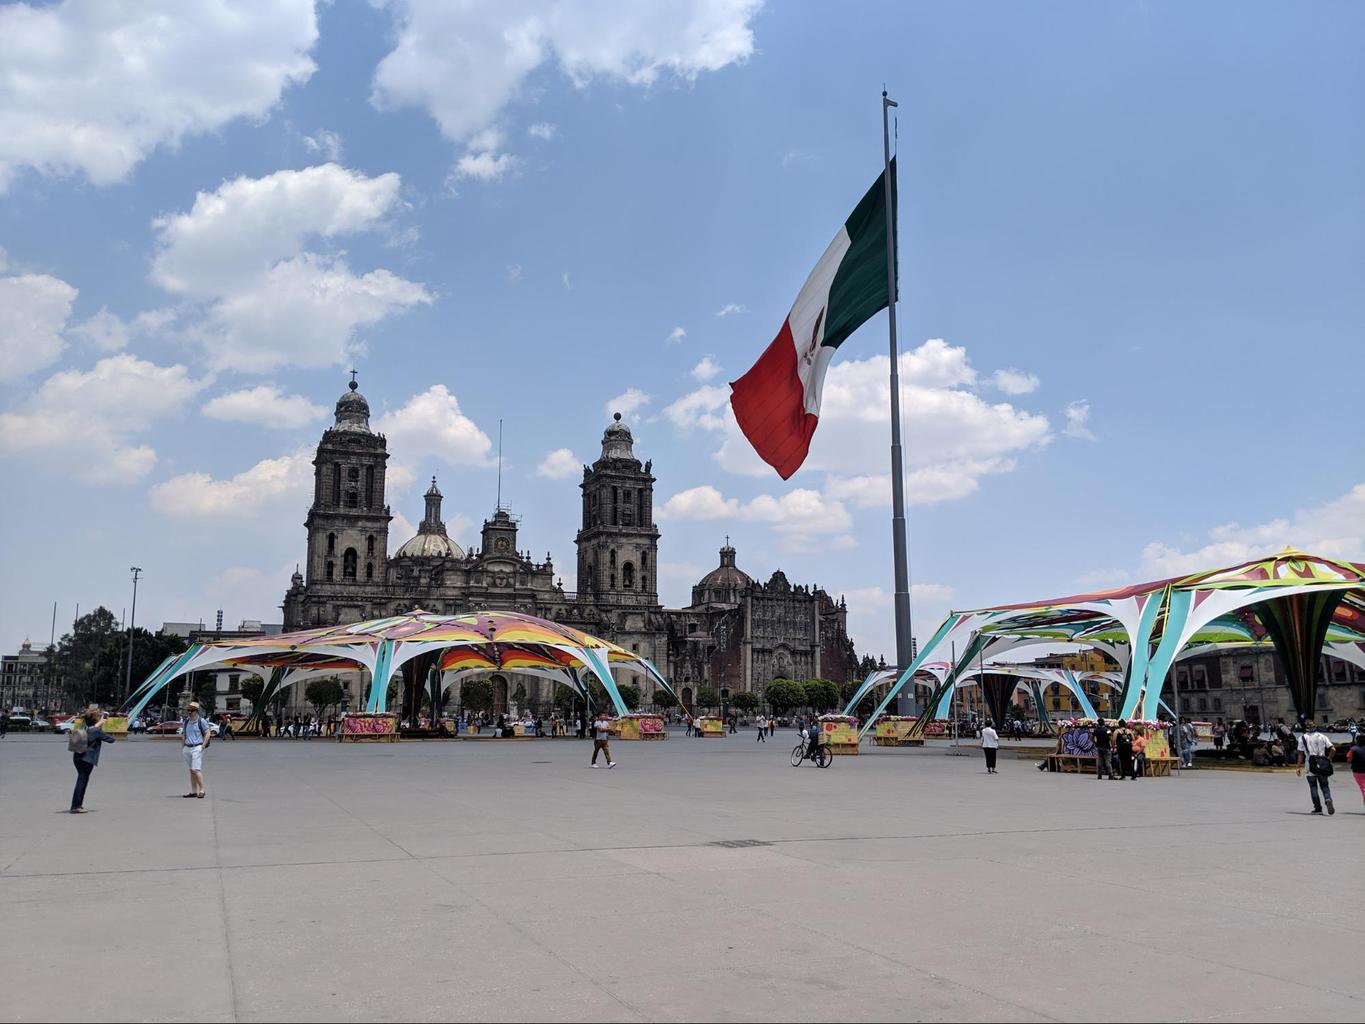 Mexico City’s El Zocalo